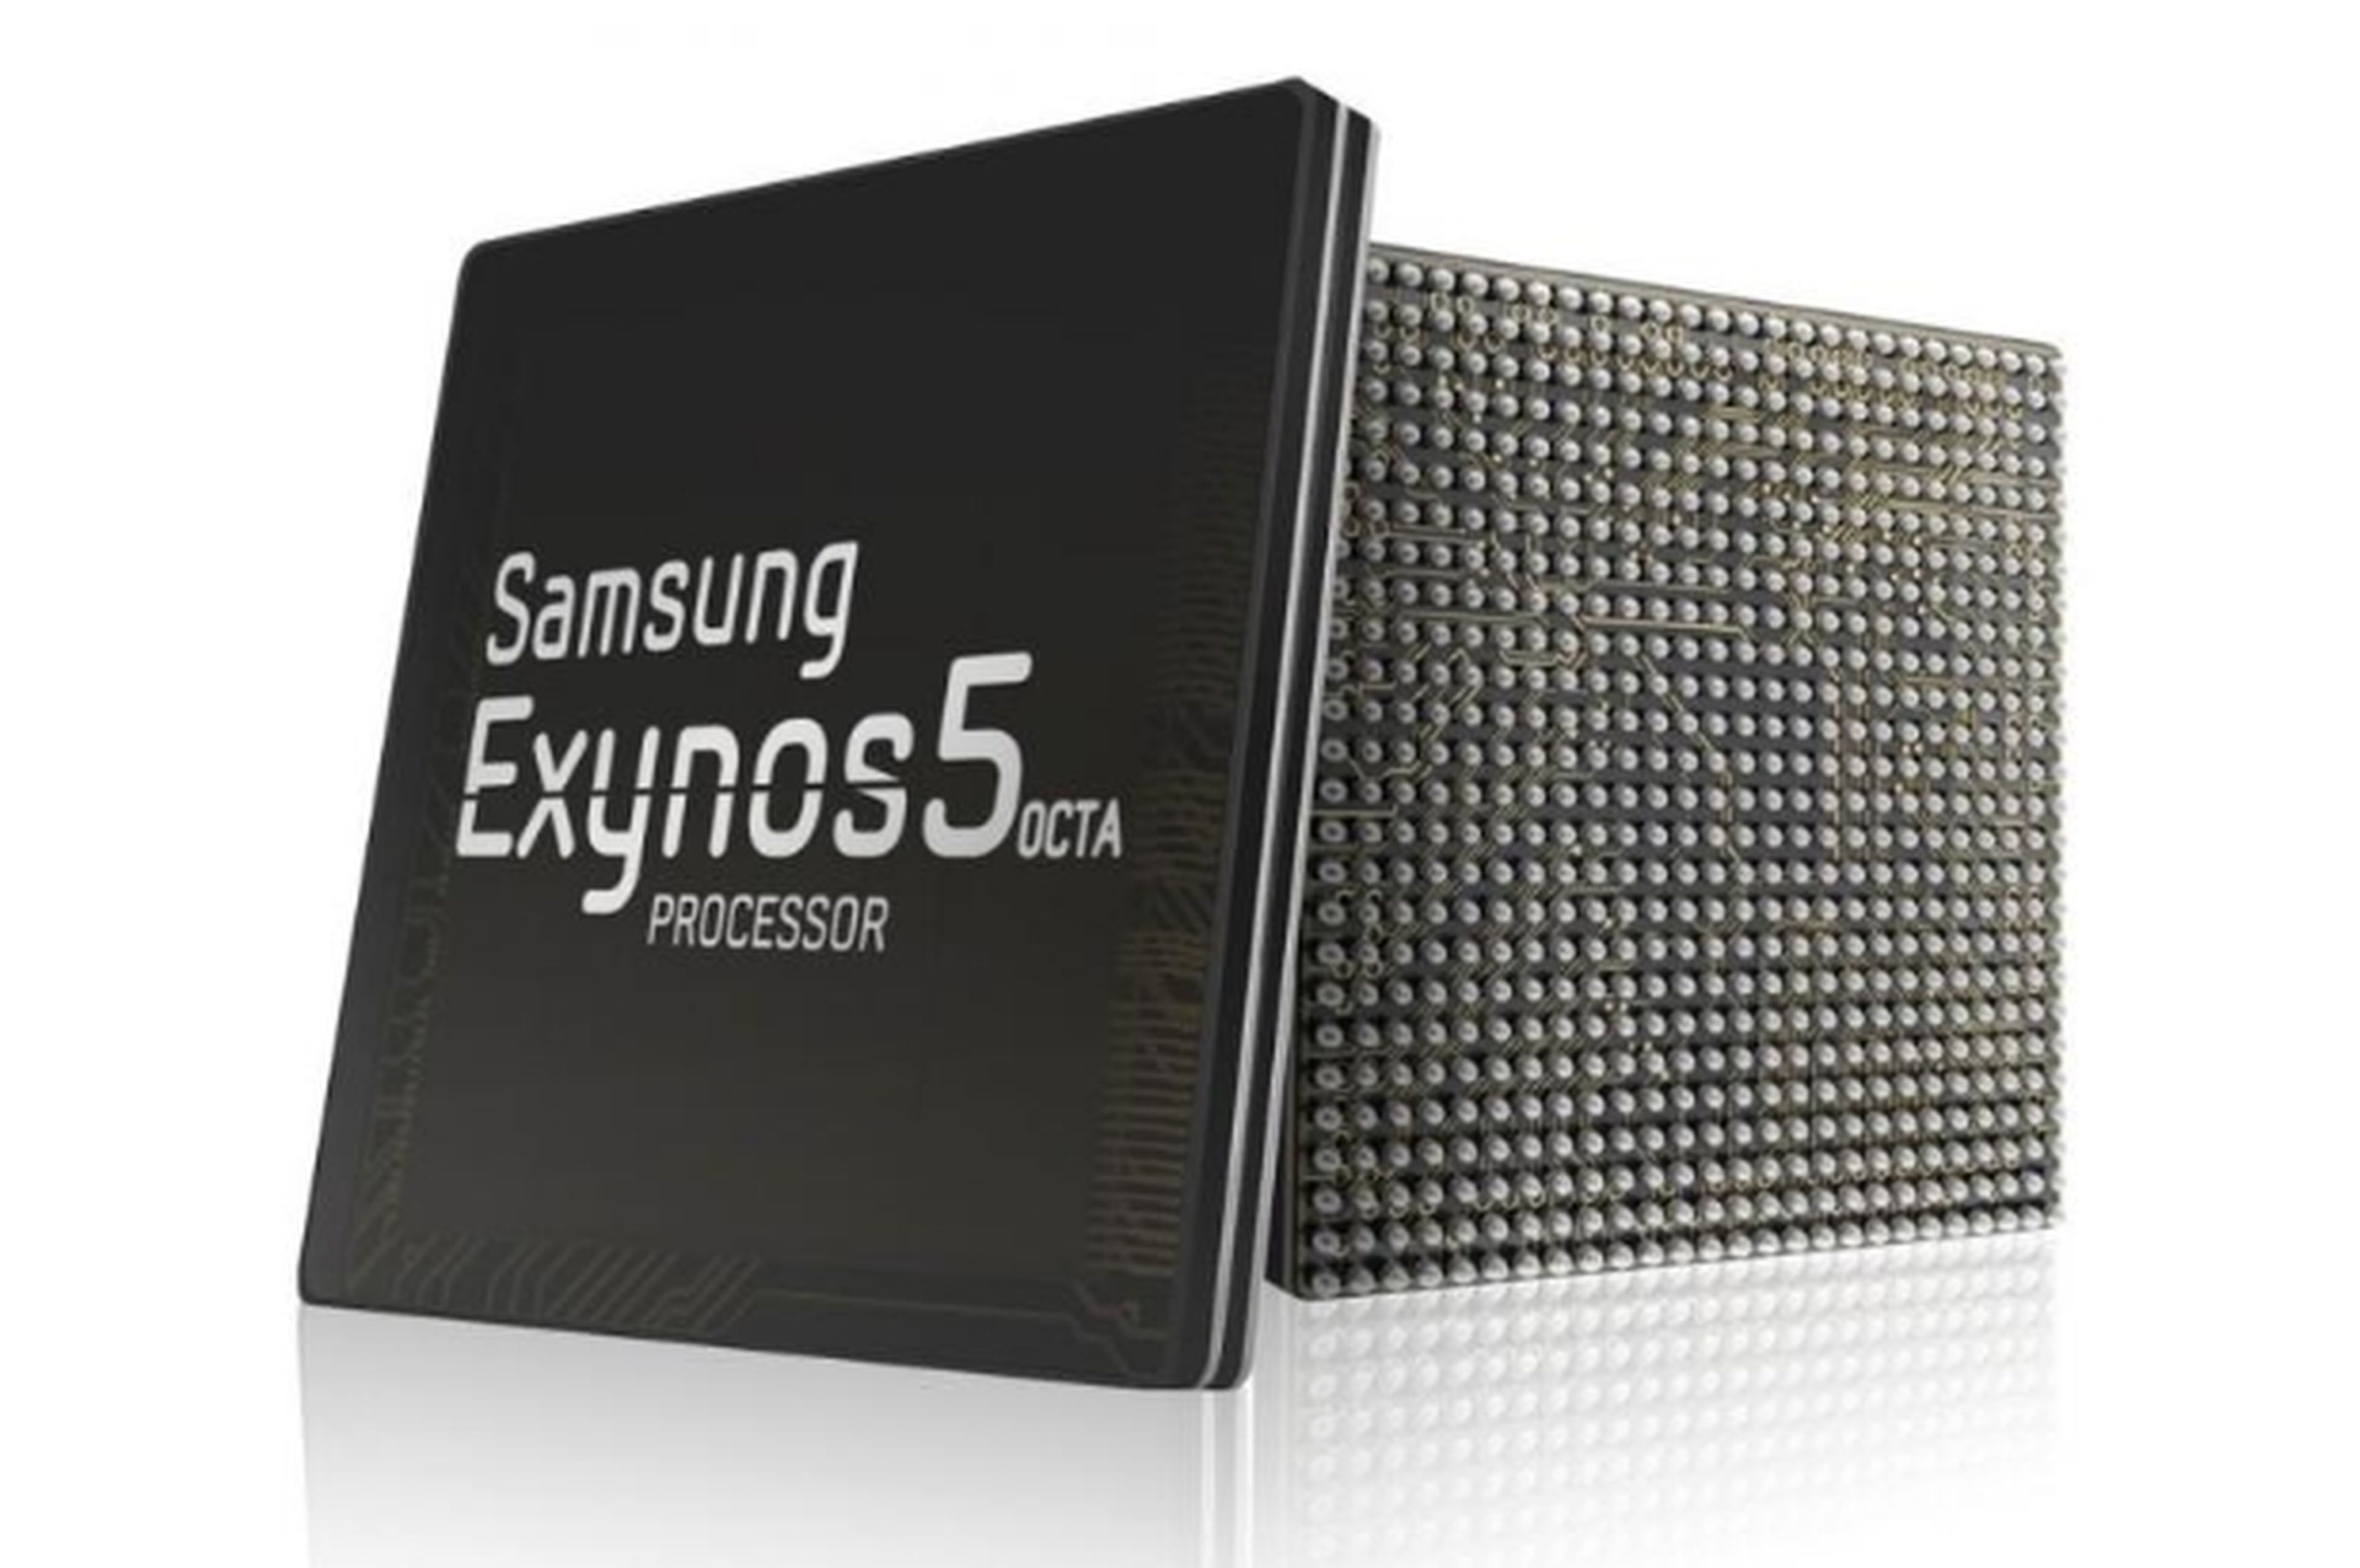 Los futuros smartphones de Samsung usarán procesadores de 64 bits